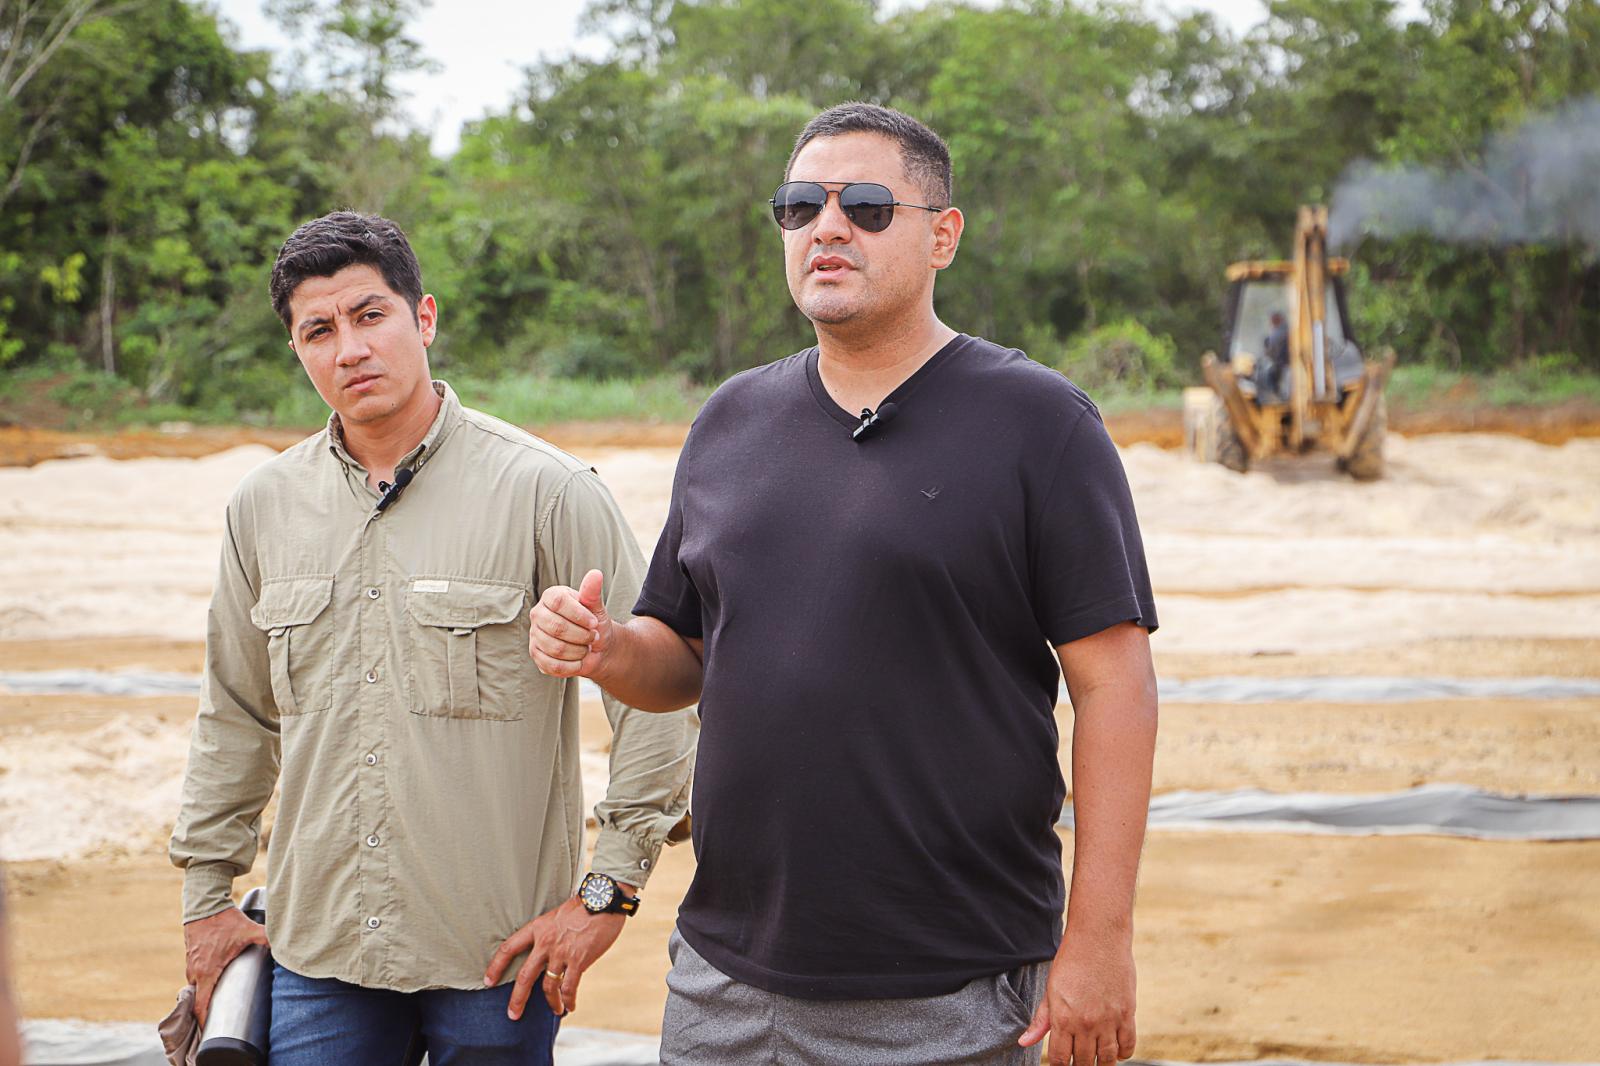 Manaus instala rede de drenagem em campos do Centro de Treinamento